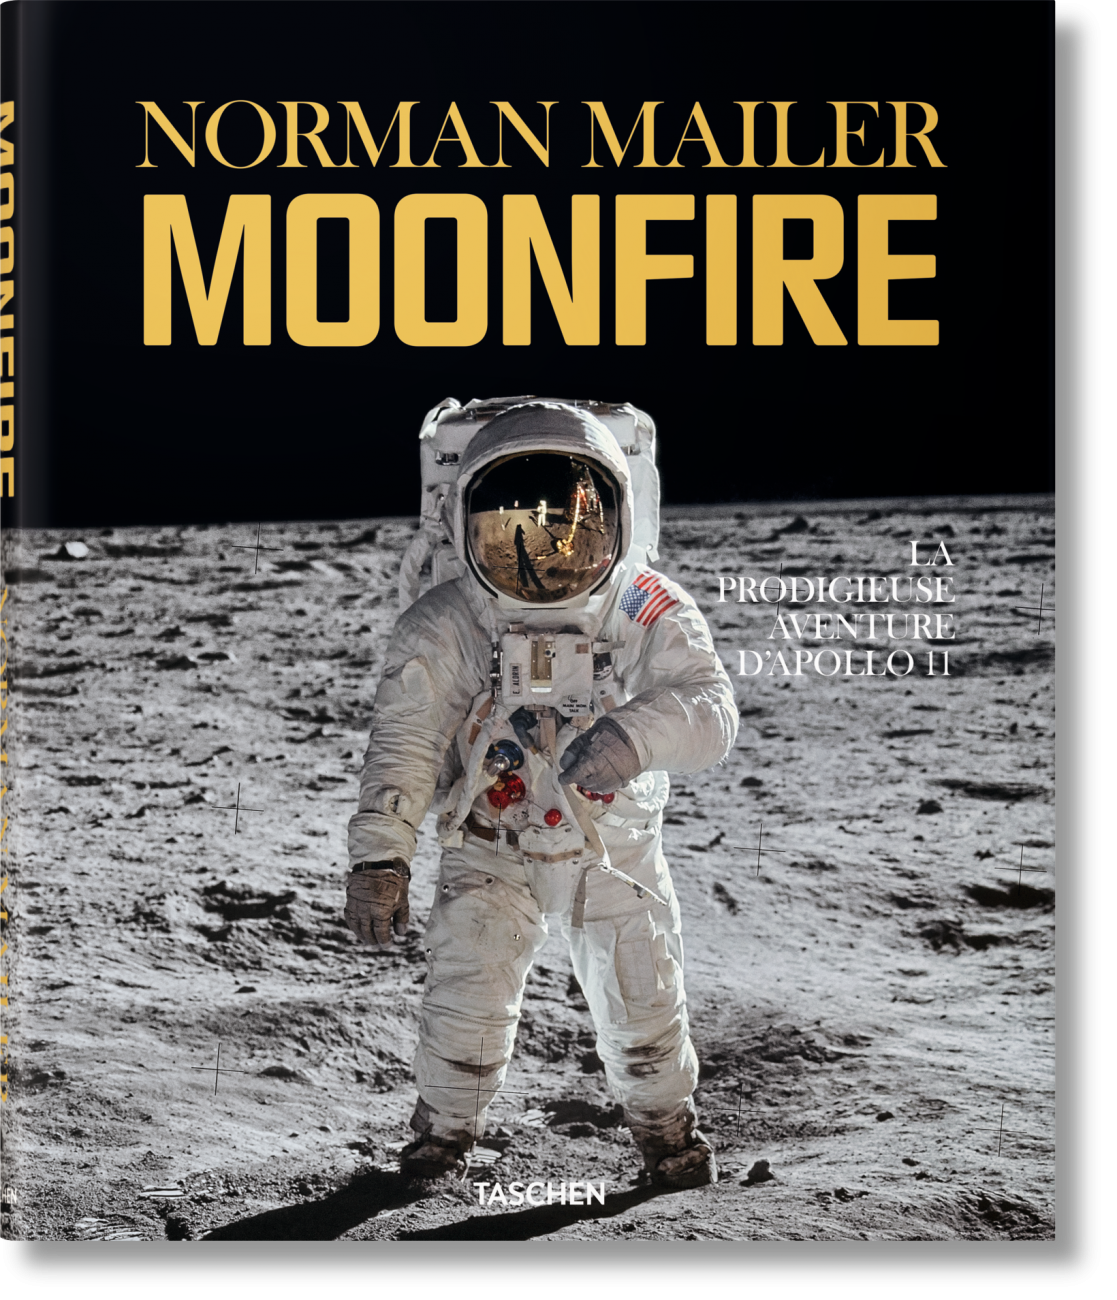 « Moonfire, la prodigieuse aventure d’Apollo 11 » par Norman Mailer